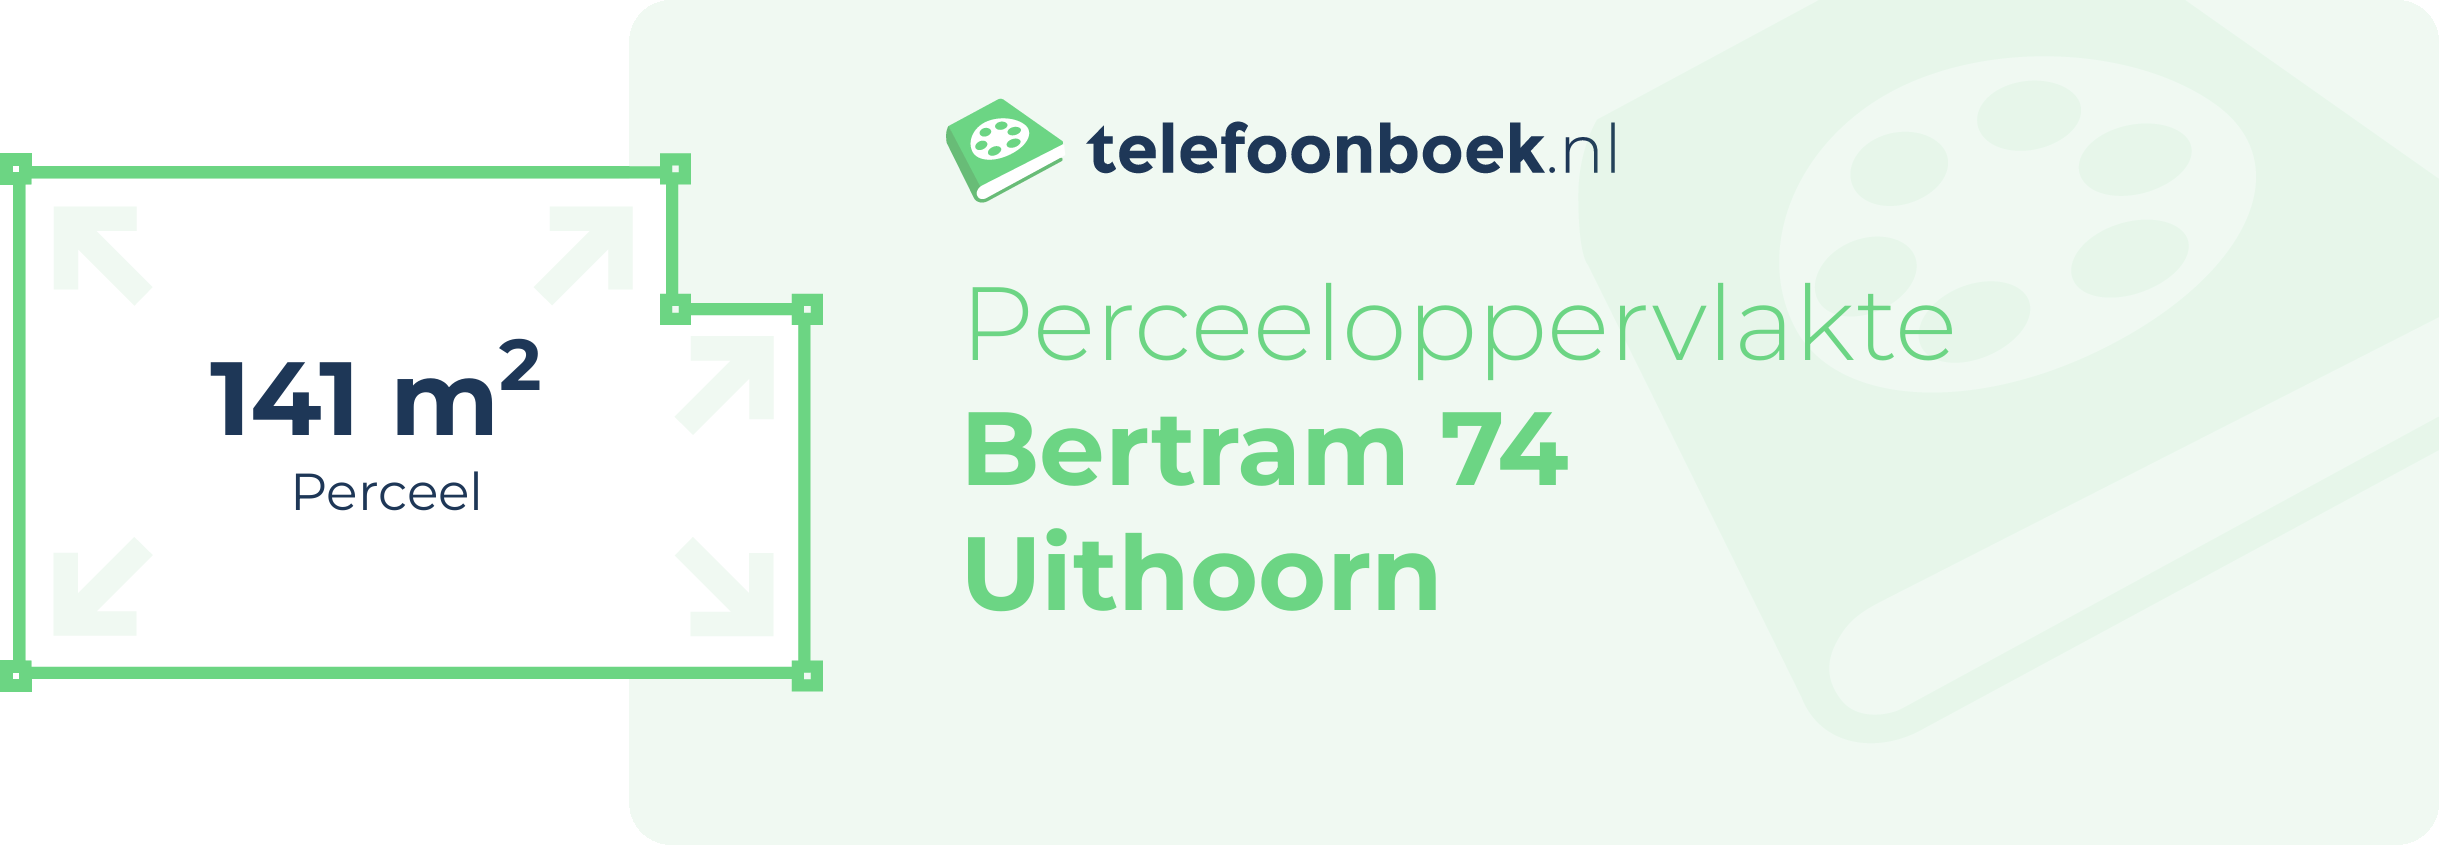 Perceeloppervlakte Bertram 74 Uithoorn